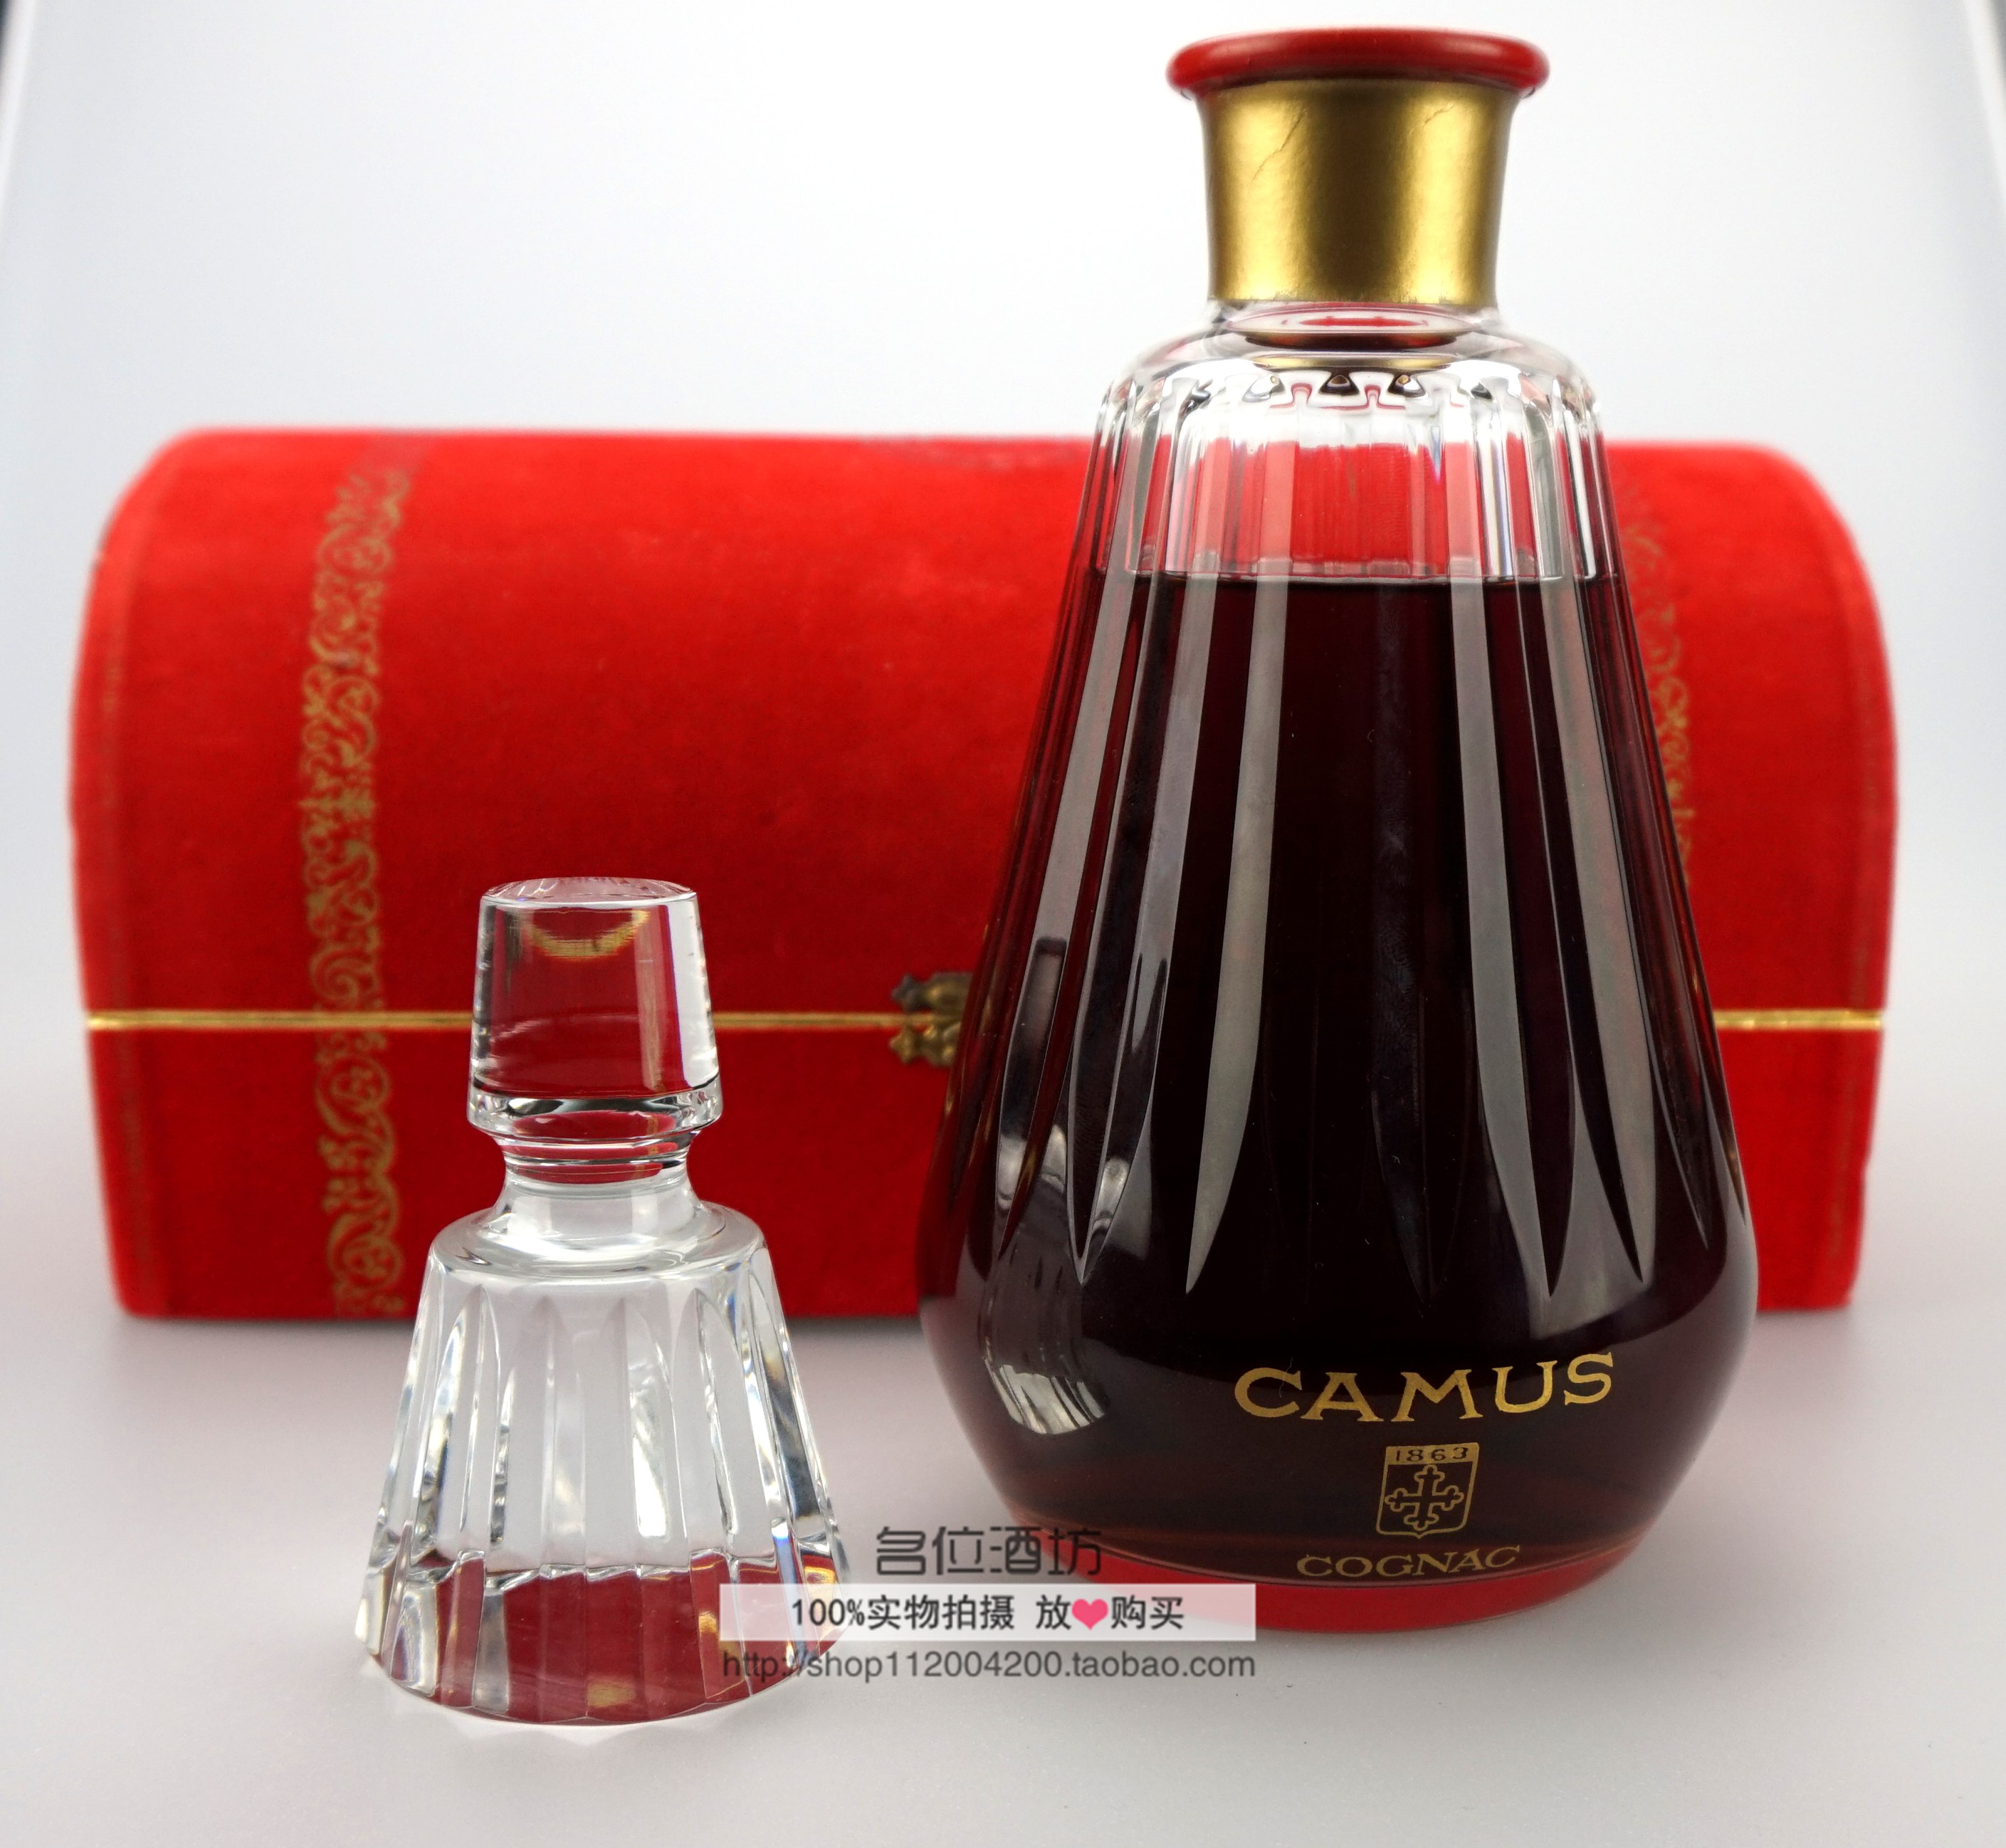 老洋酒70年代 Camus 卡慕 金花 水晶瓶 红头木瓜 配件齐全折扣优惠信息